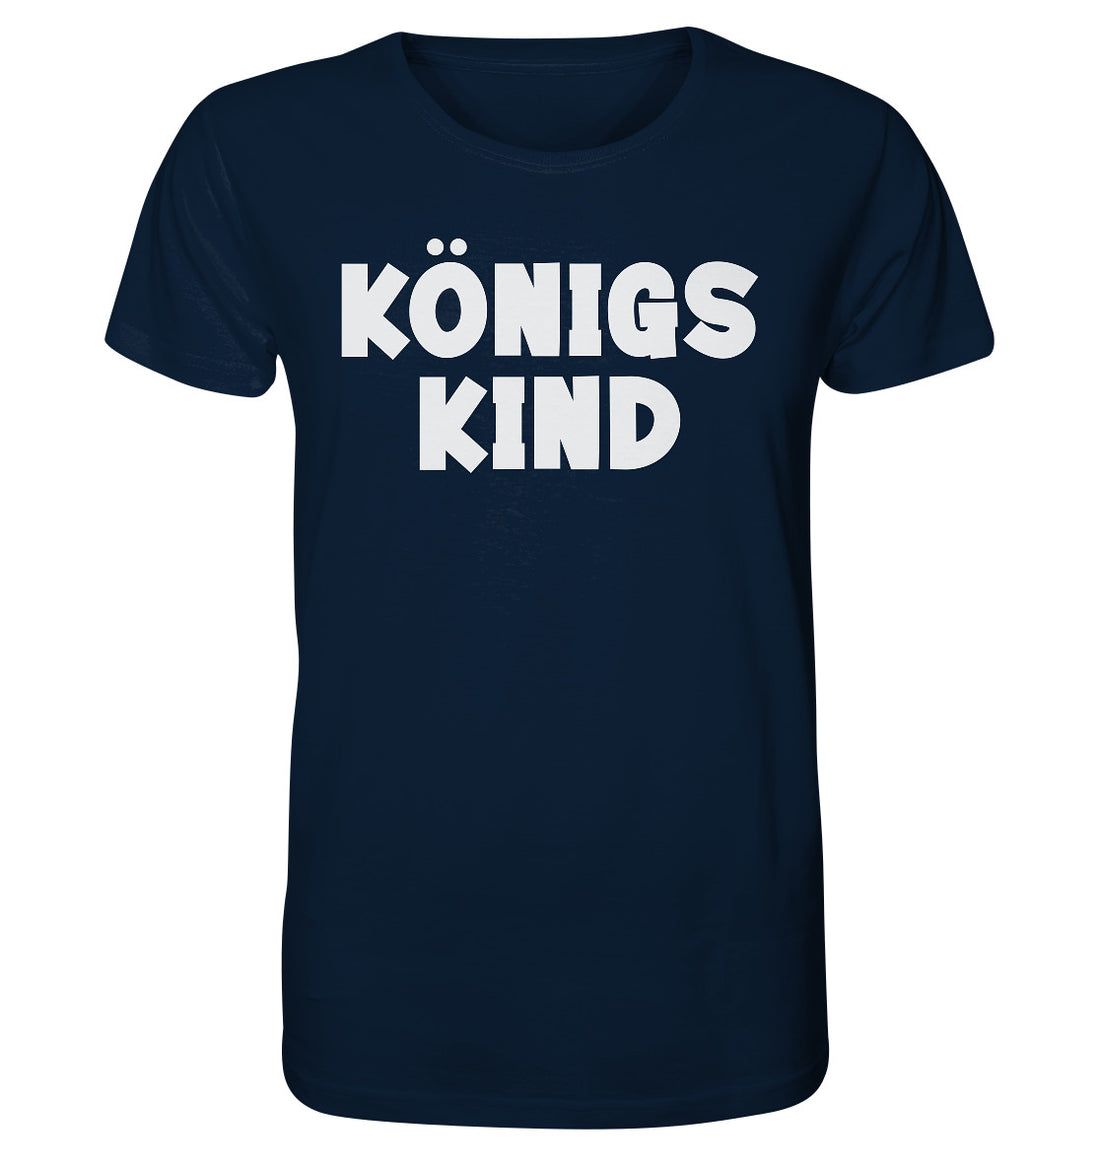 Königskind (2) - Organic Shirt